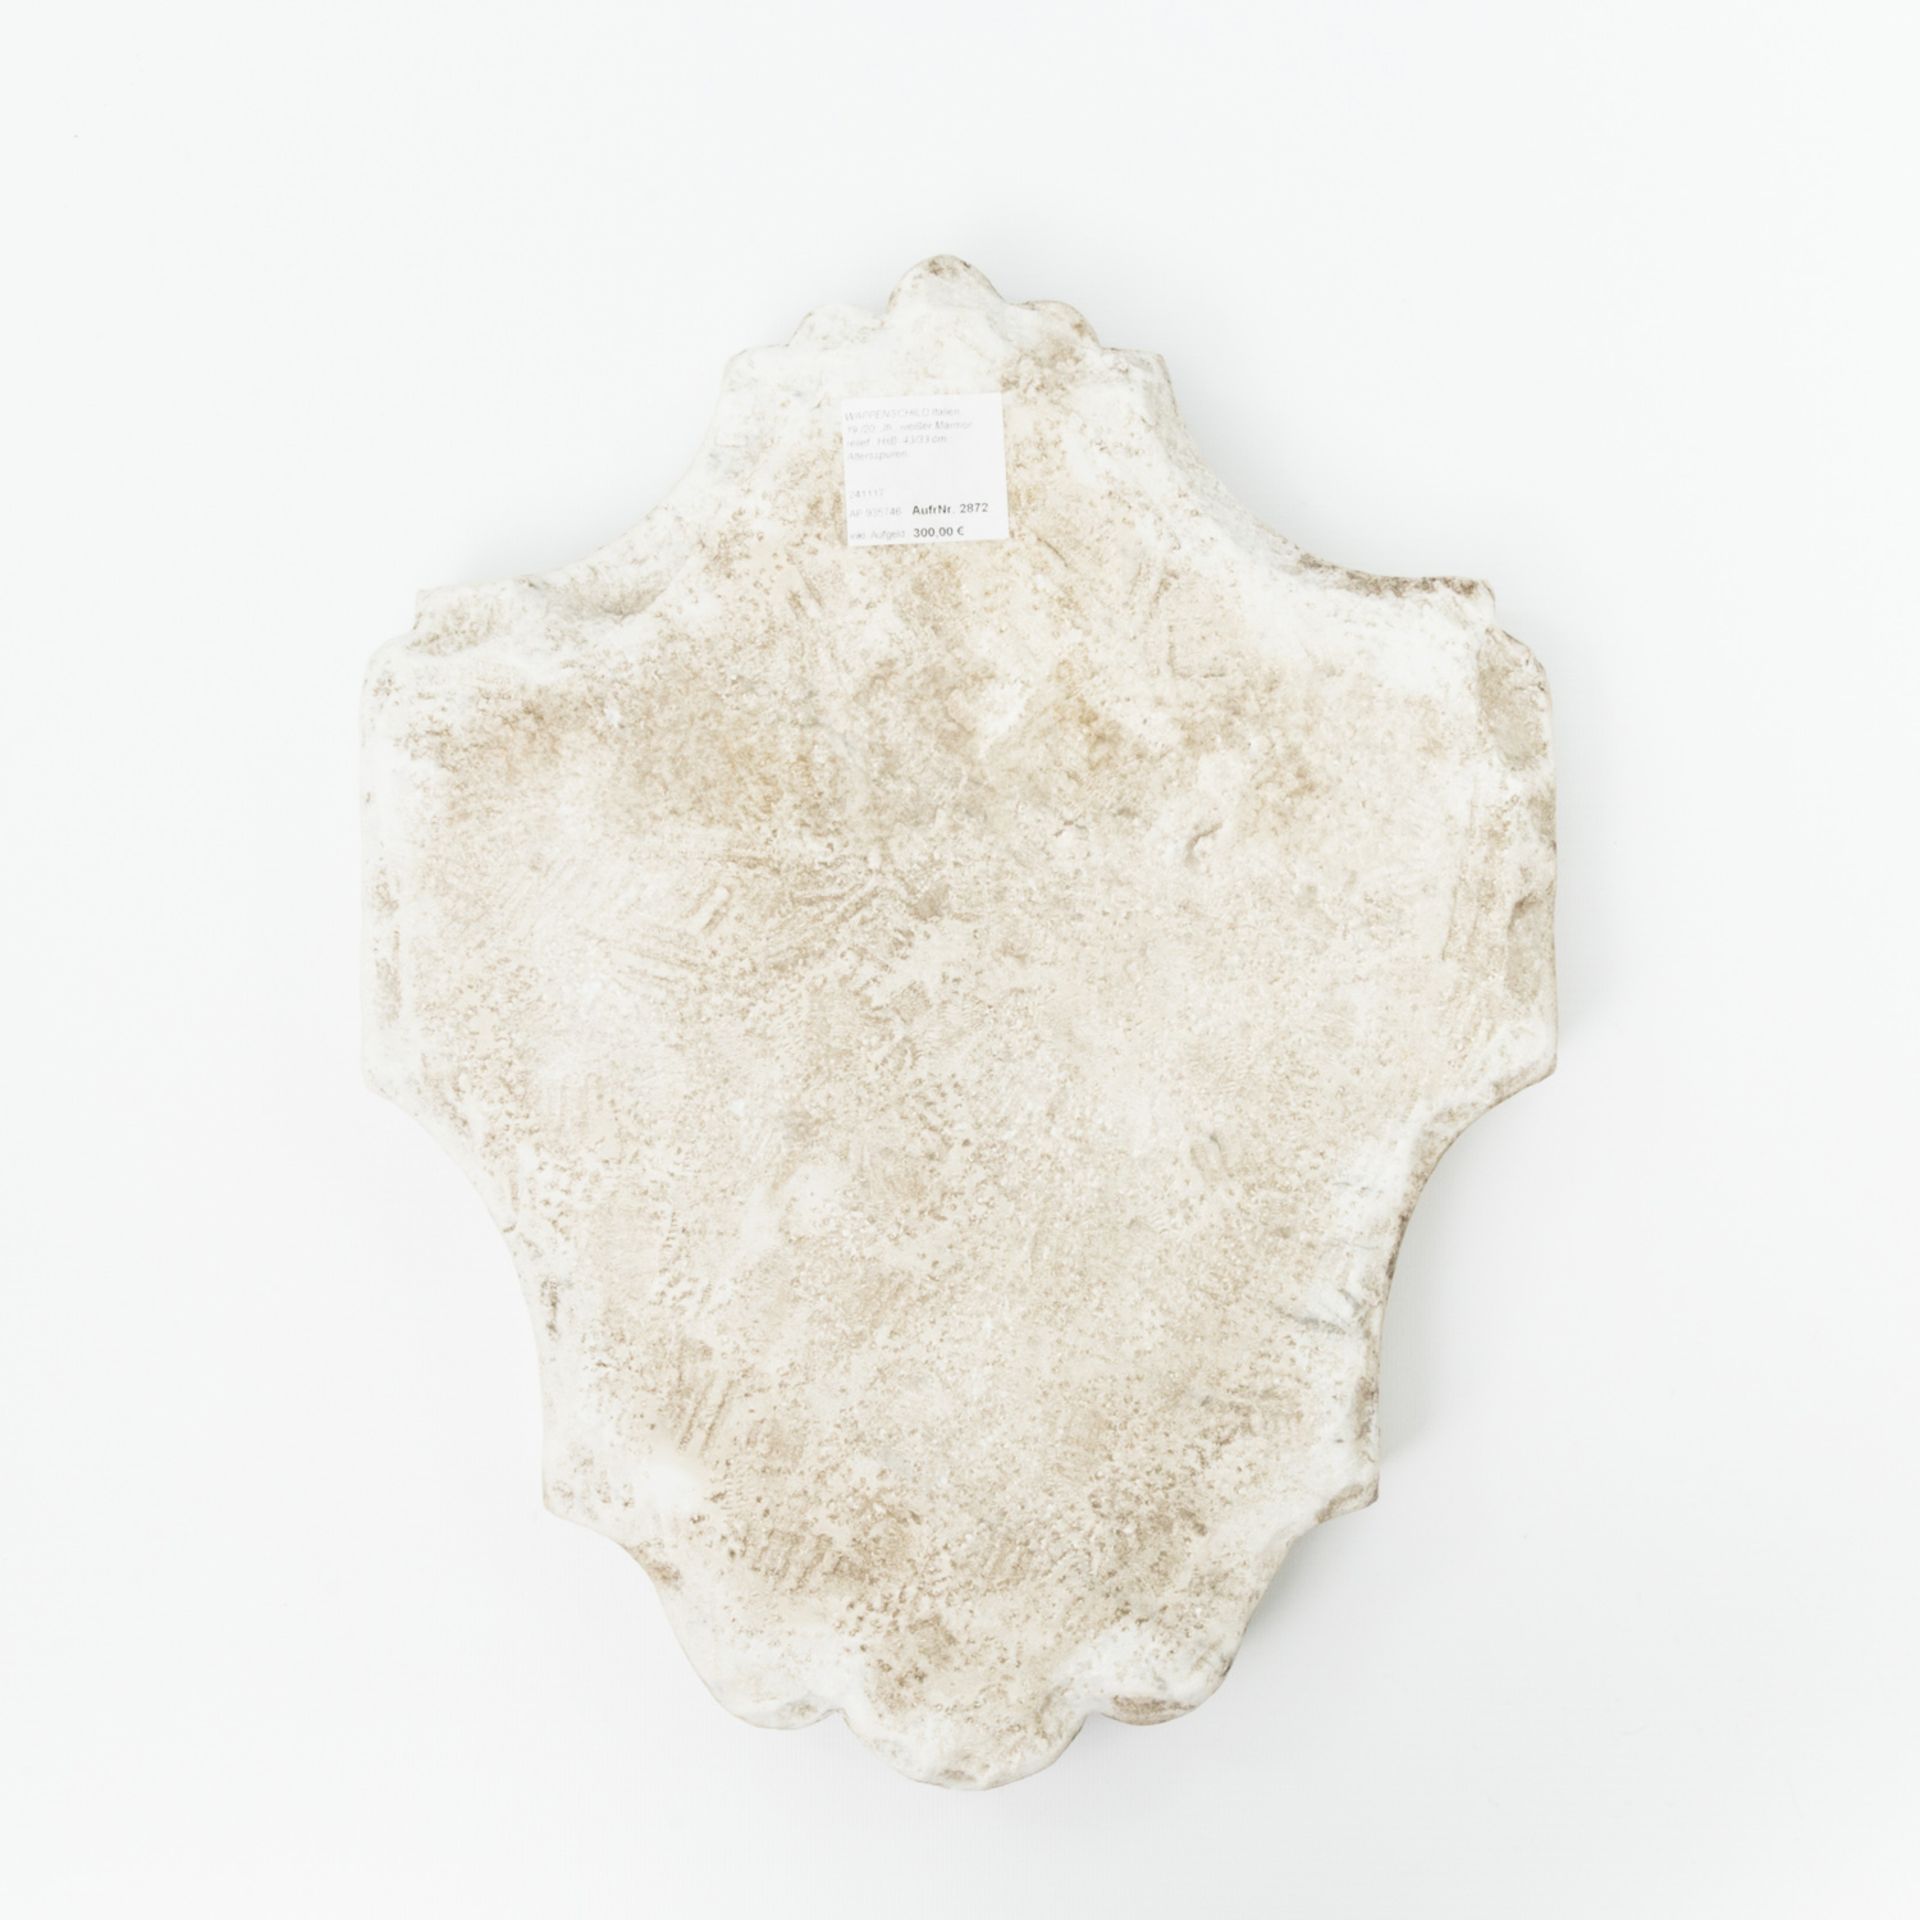 WAPPENSCHILDItalien, 19./20. Jh., weißer Marmor im Relief, H x B ca. 43/33 cm. Altersspuren. - Bild 2 aus 2